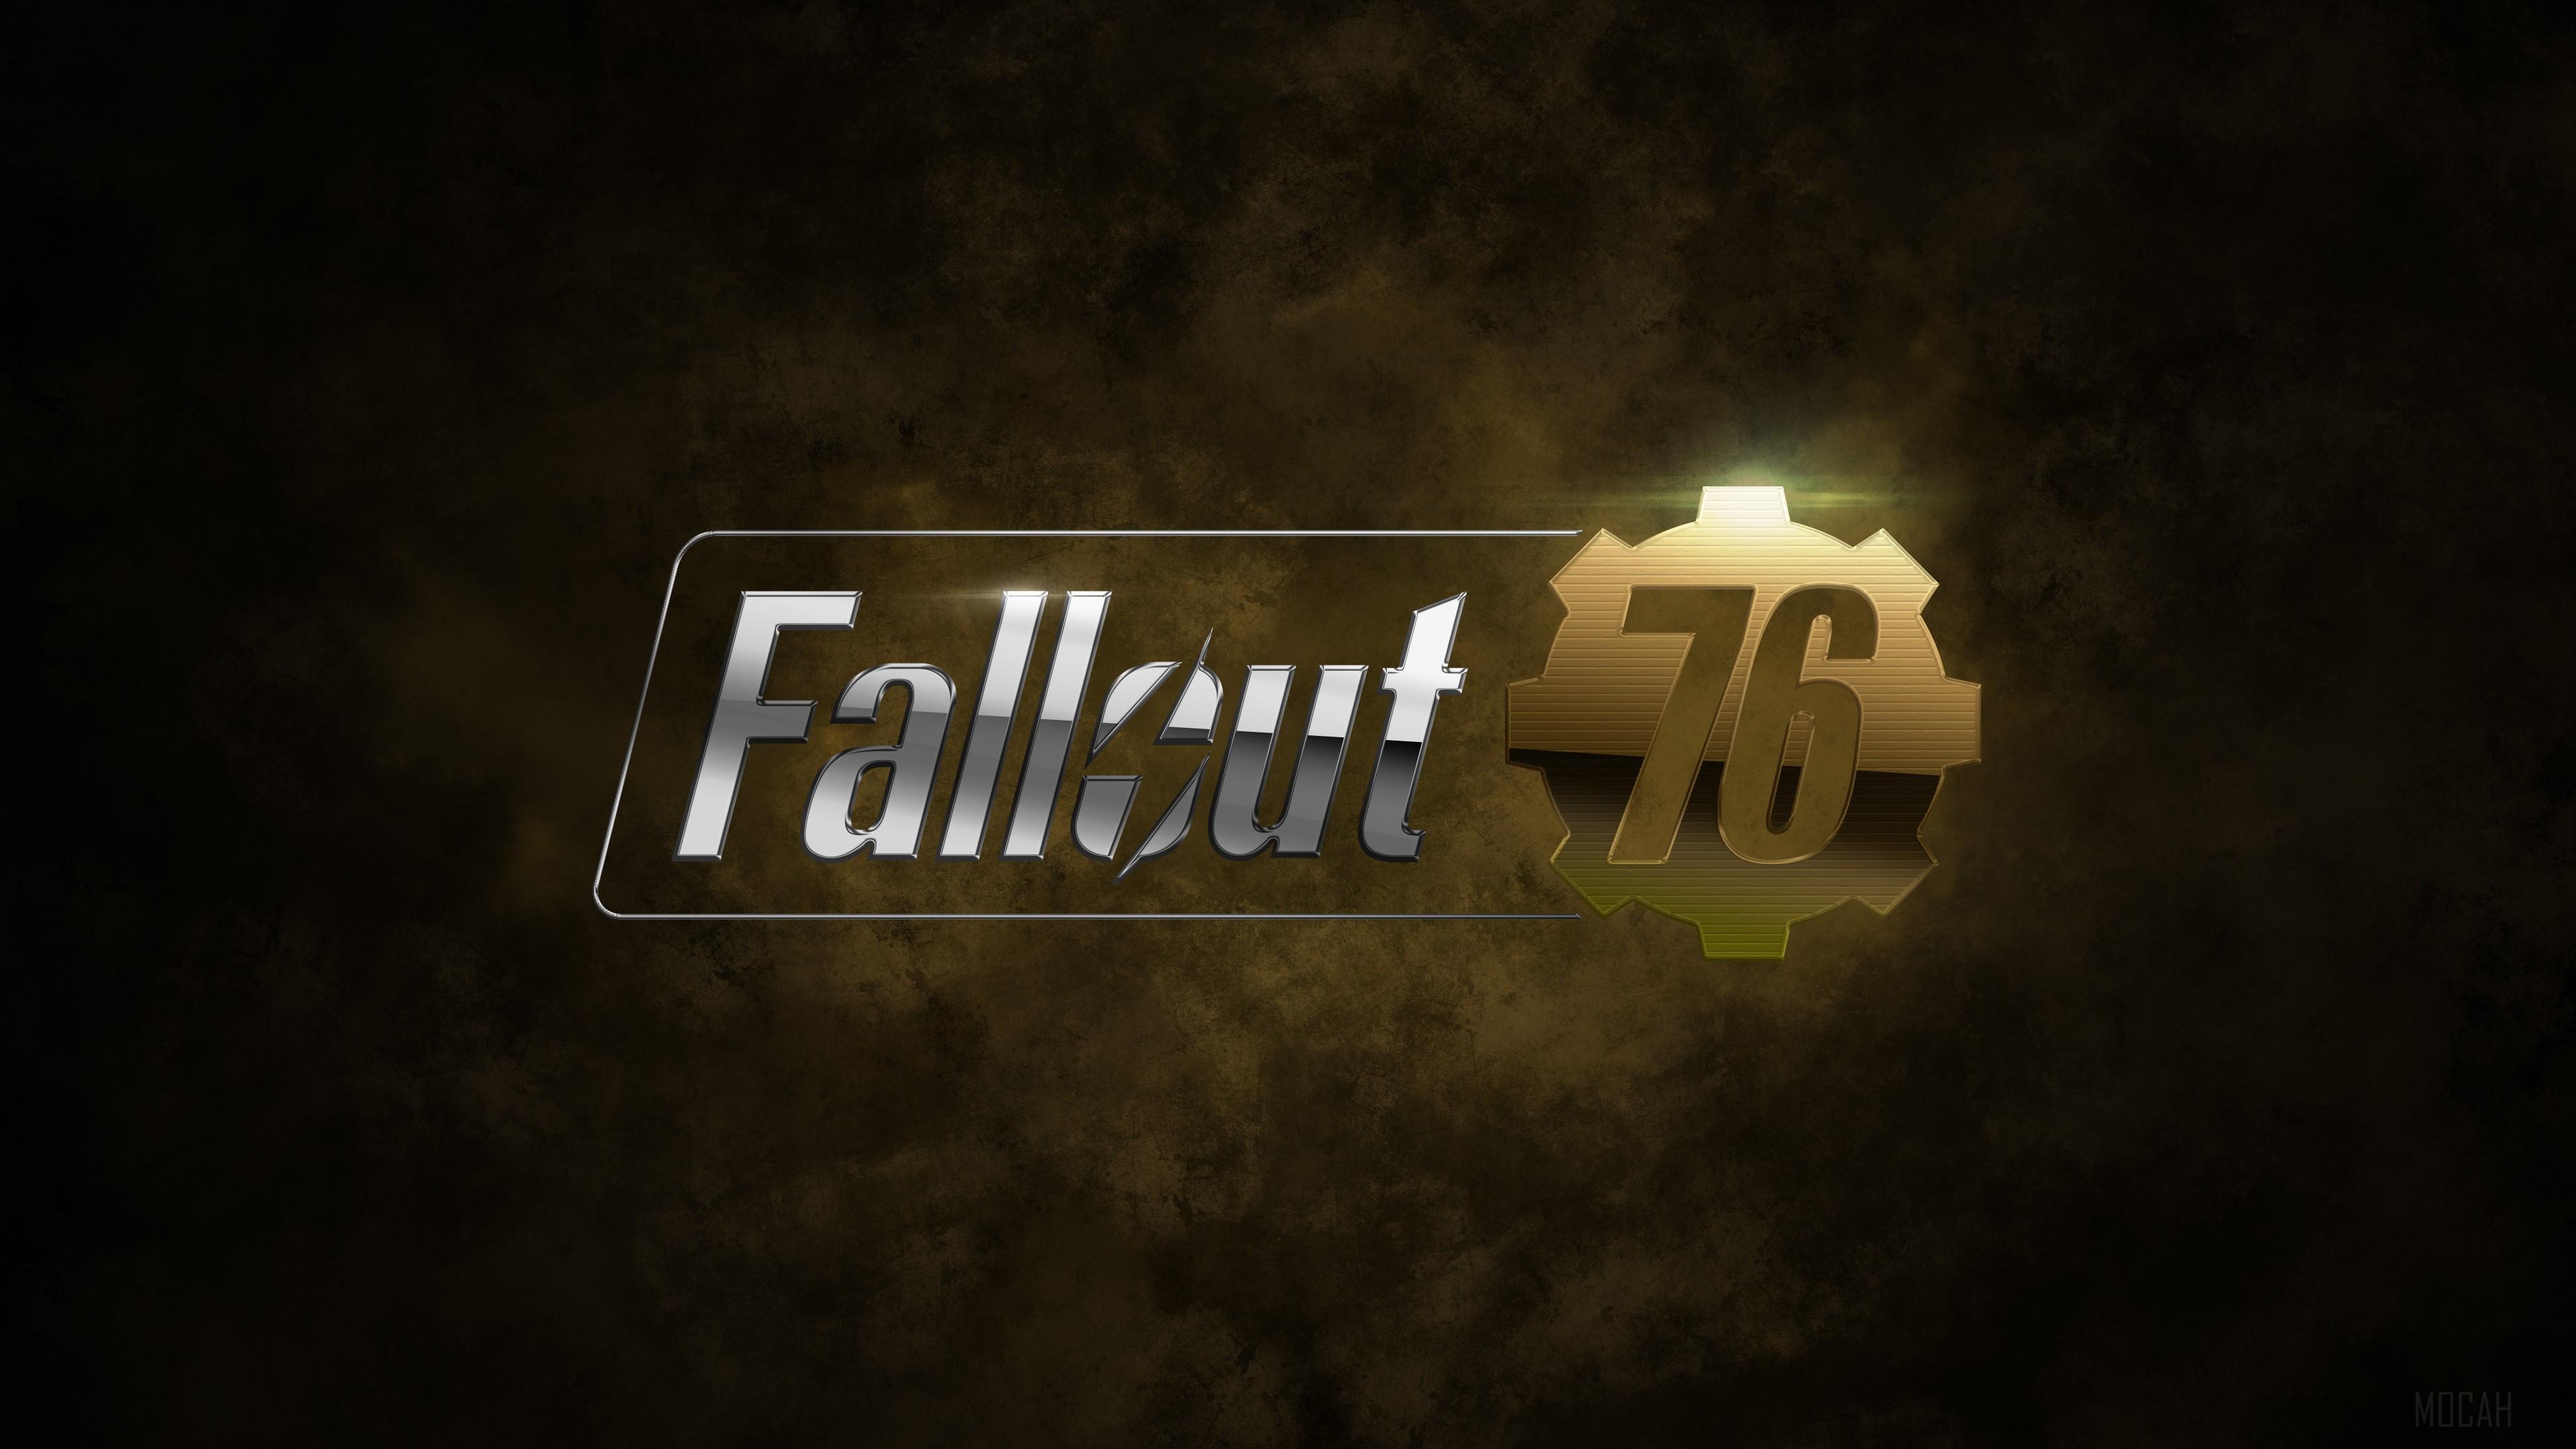 HD wallpaper, Fallout 76 Game Logo 4K